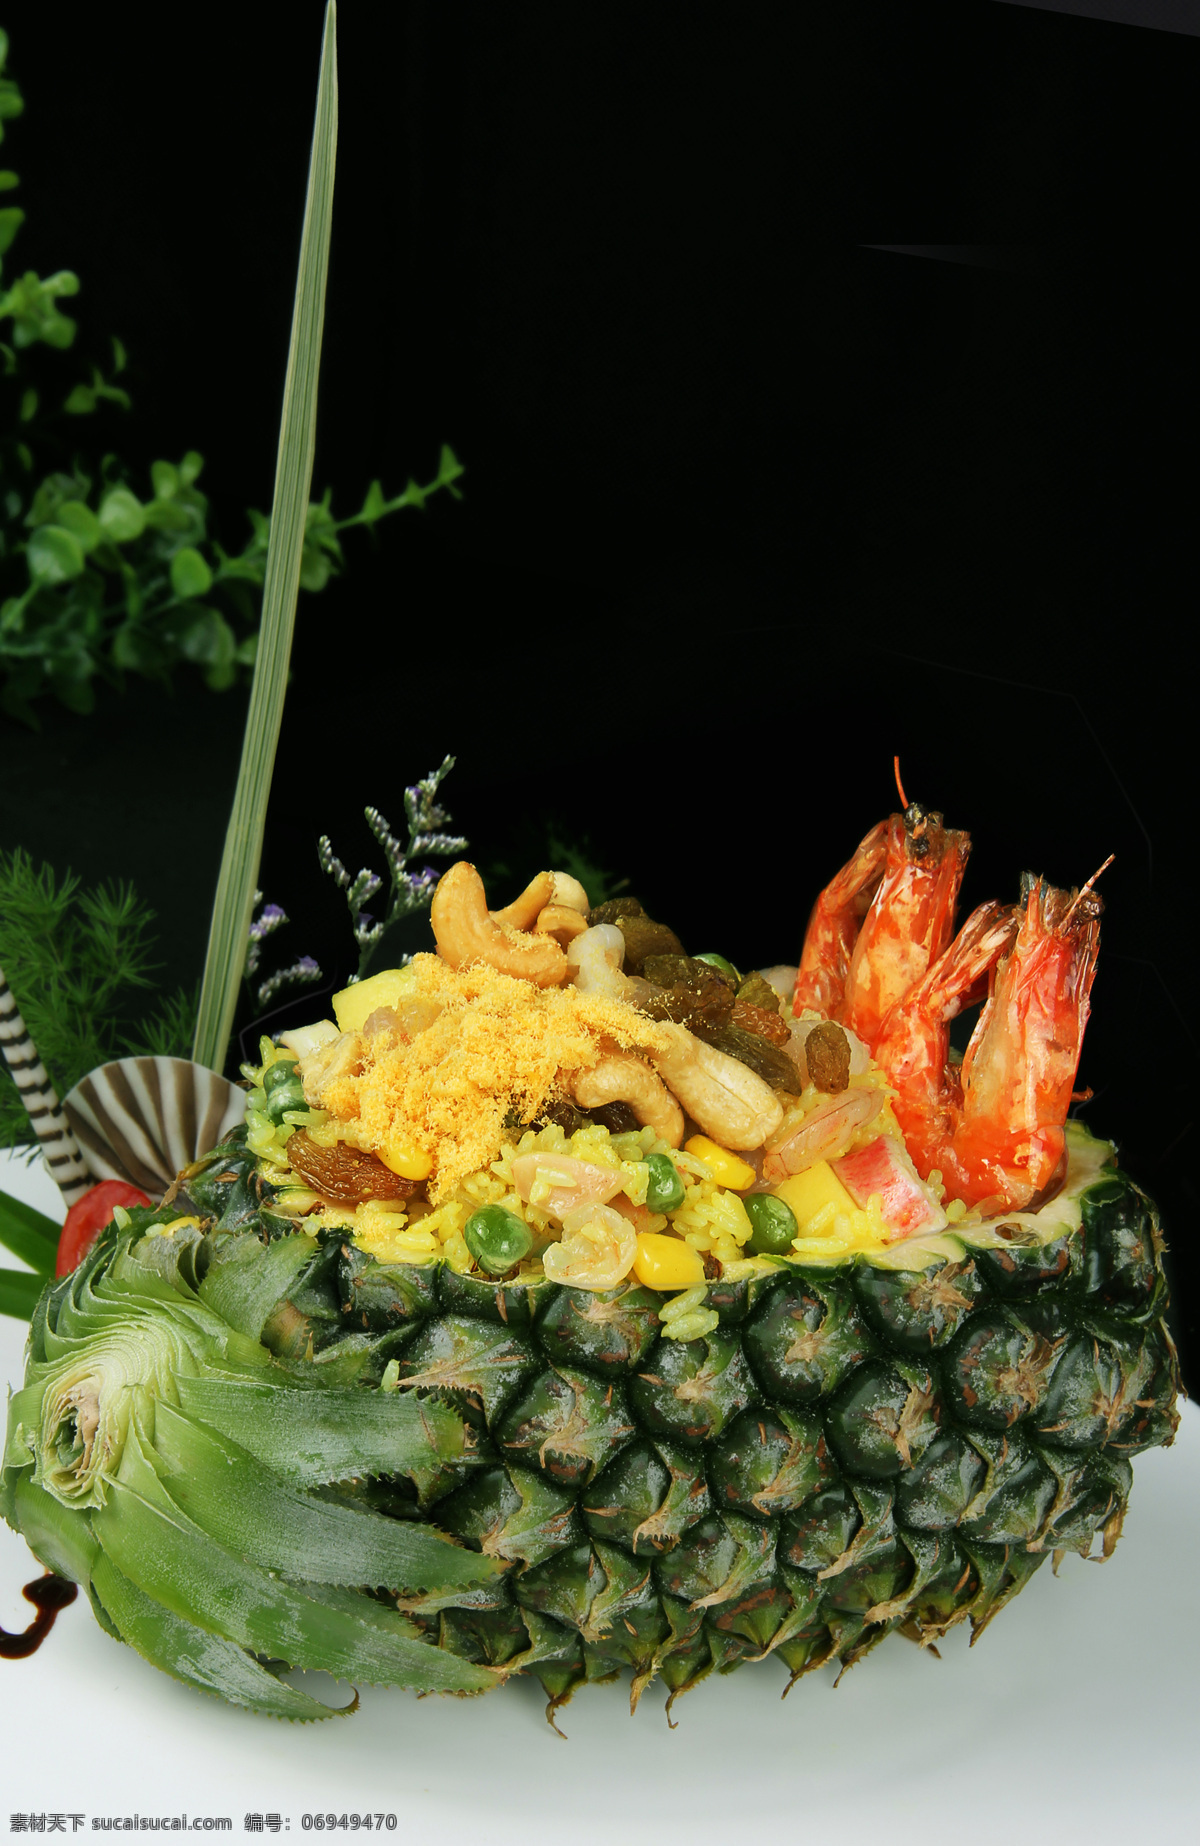 菠萝海鲜炒饭 菠萝炒饭 海鲜炒饭 泰国菜 水果炒饭 西餐美食 餐饮美食